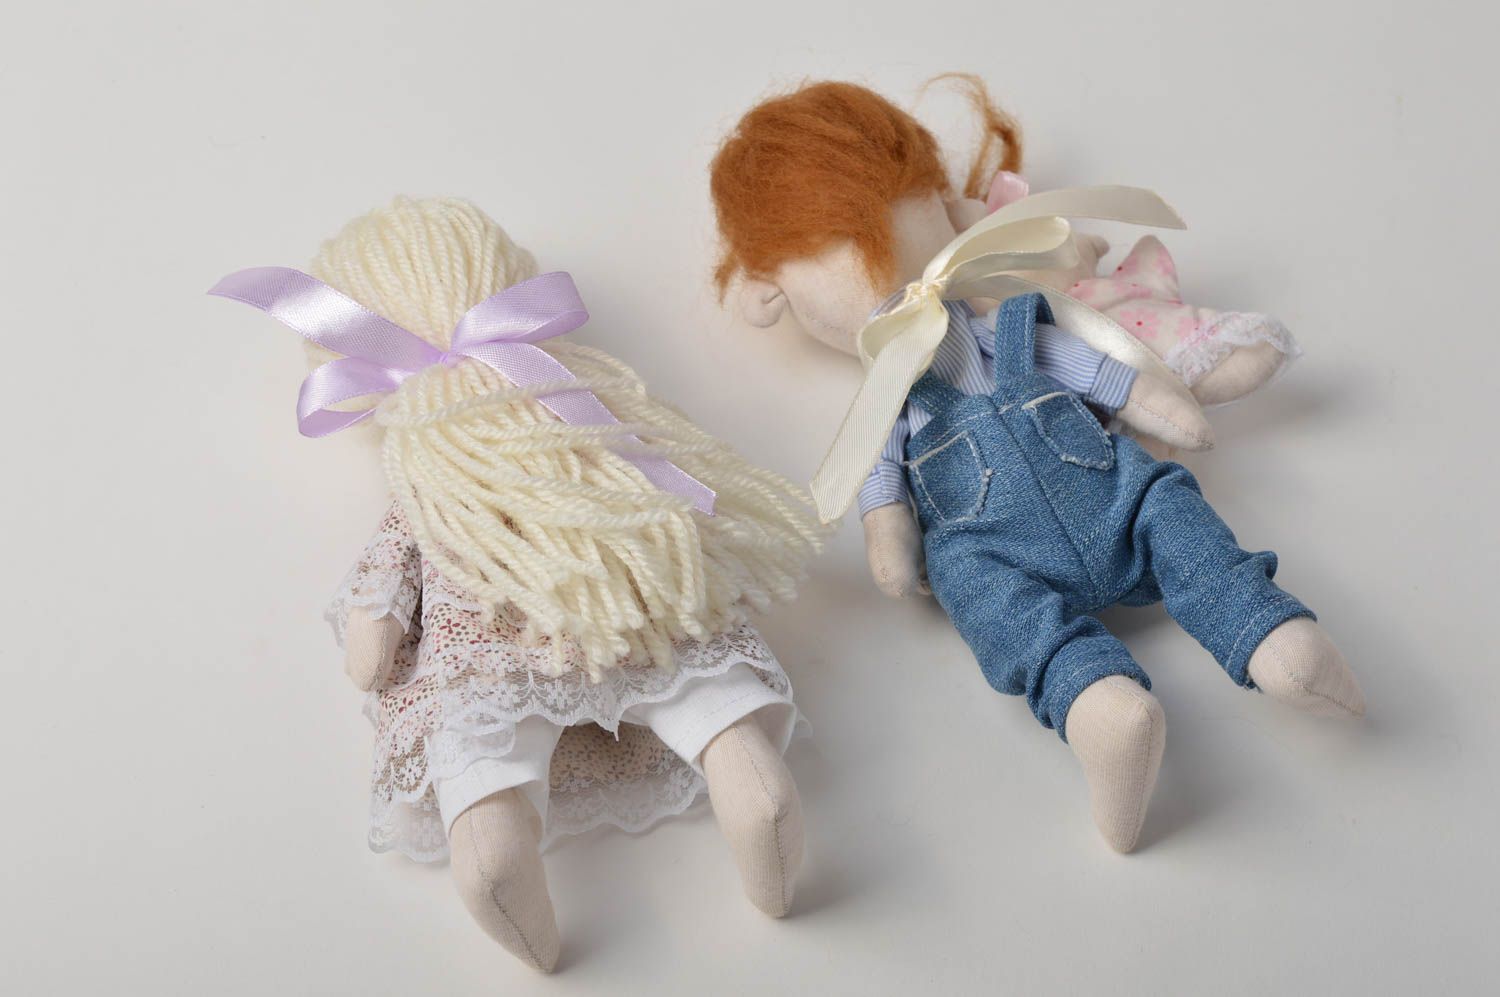 Handmade doll set of dolls designer doll unusual gift for girl nursery decor photo 4